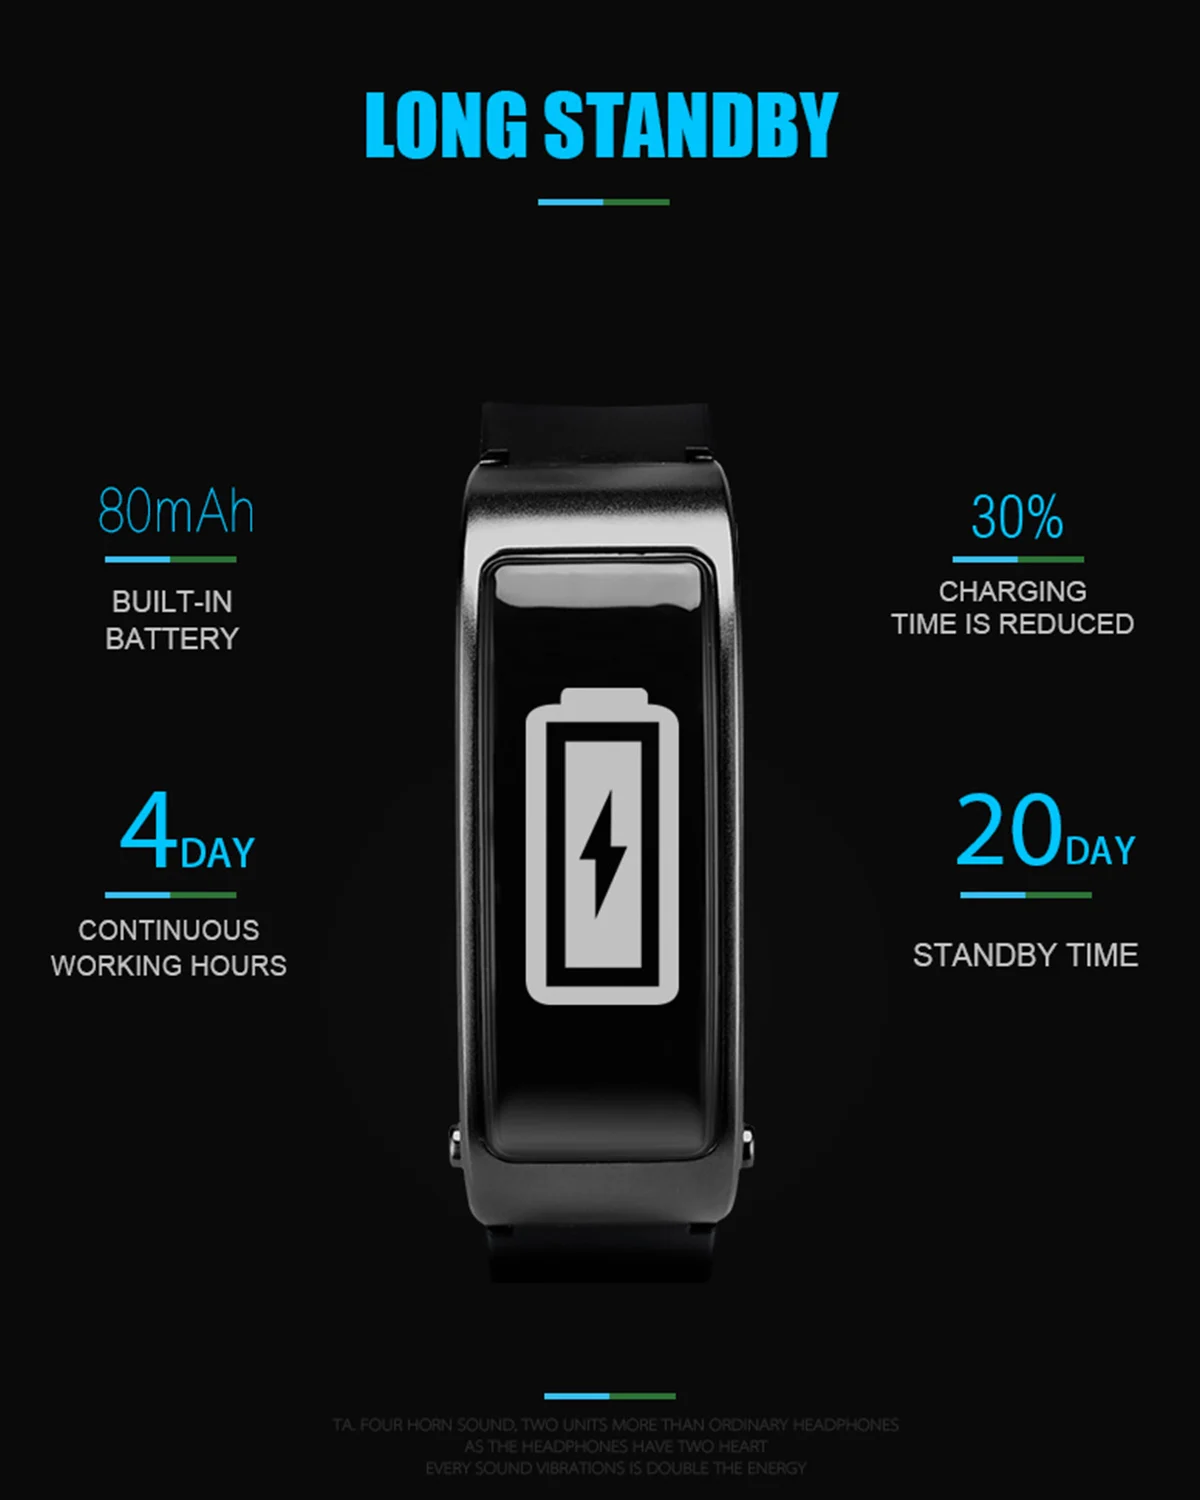 JRGK Y3 Смарт-часы, браслет для вождения, умные часы с Bluetooth наушниками, монитор сердечного ритма, шагомер, наушники для IOS Android